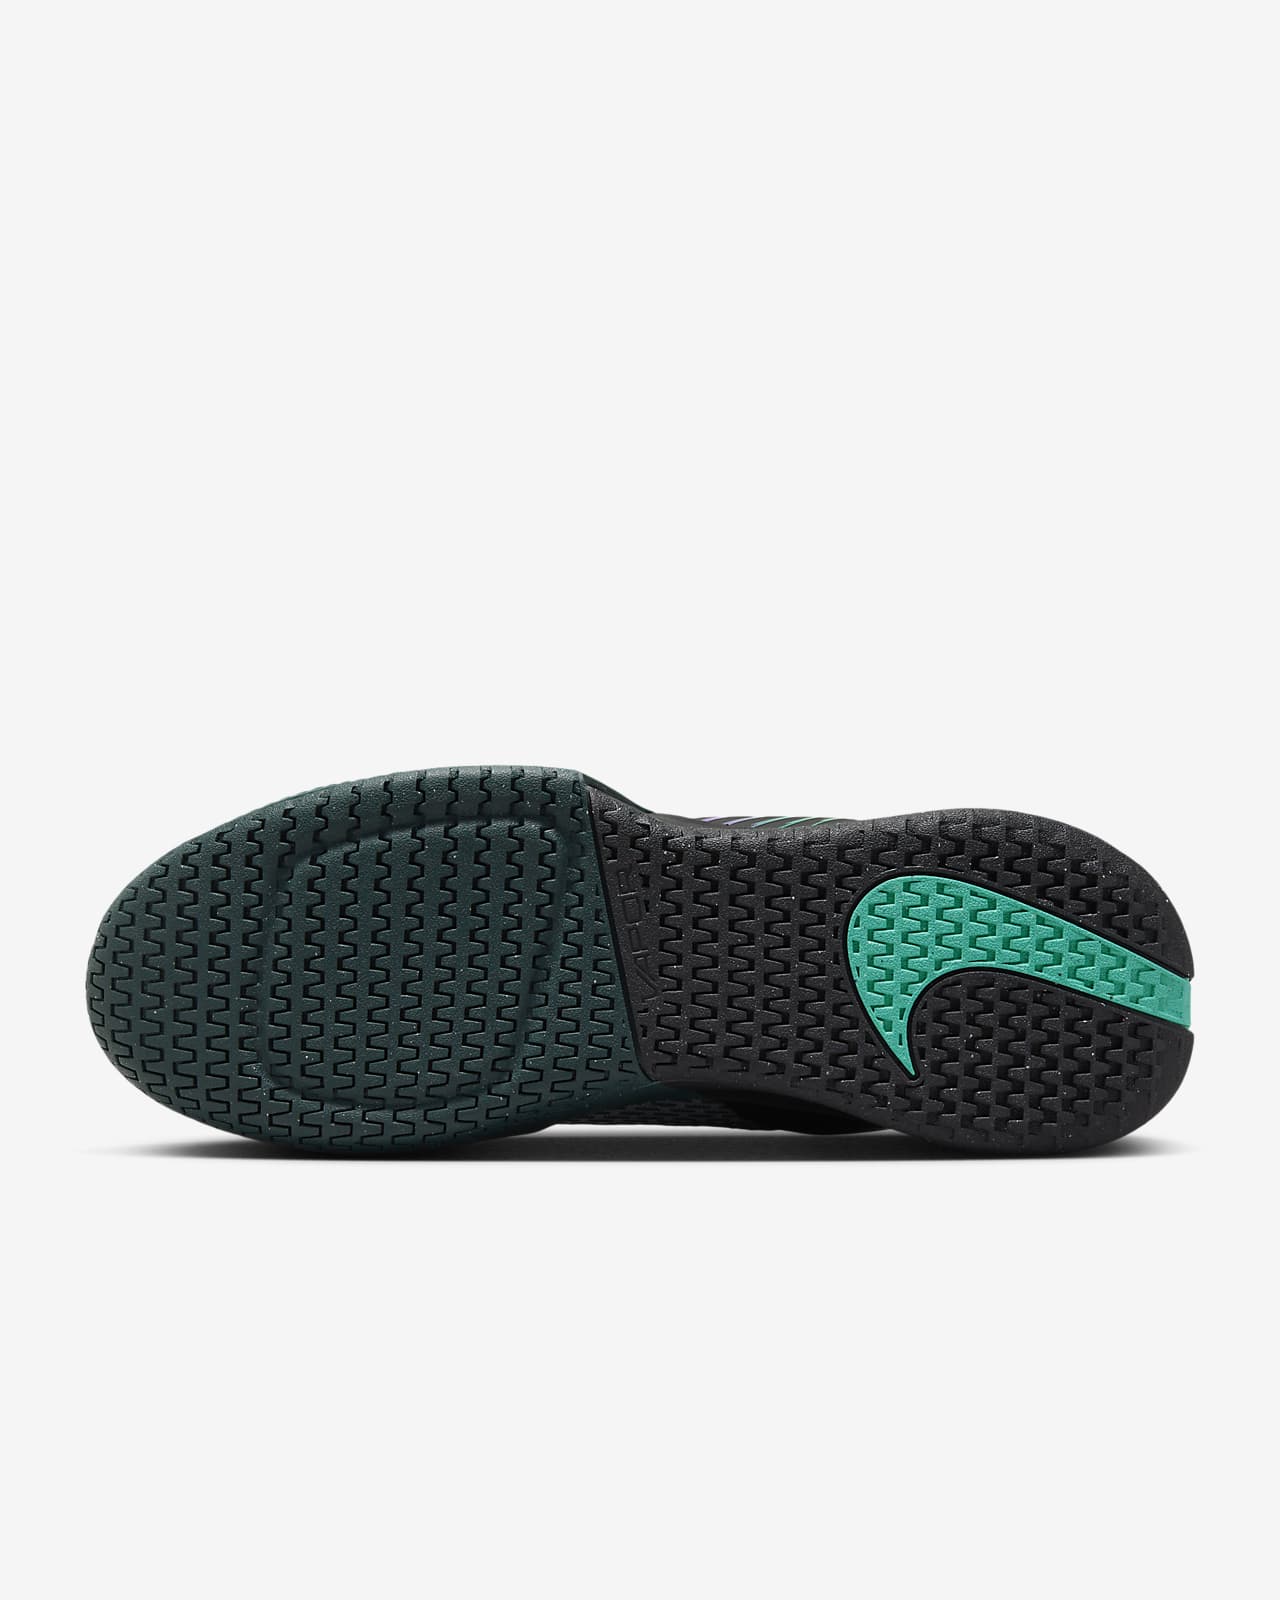 NikeCourt Air Zoom Vapor Pro 2 Premium Men's Hard Court Tennis Shoes